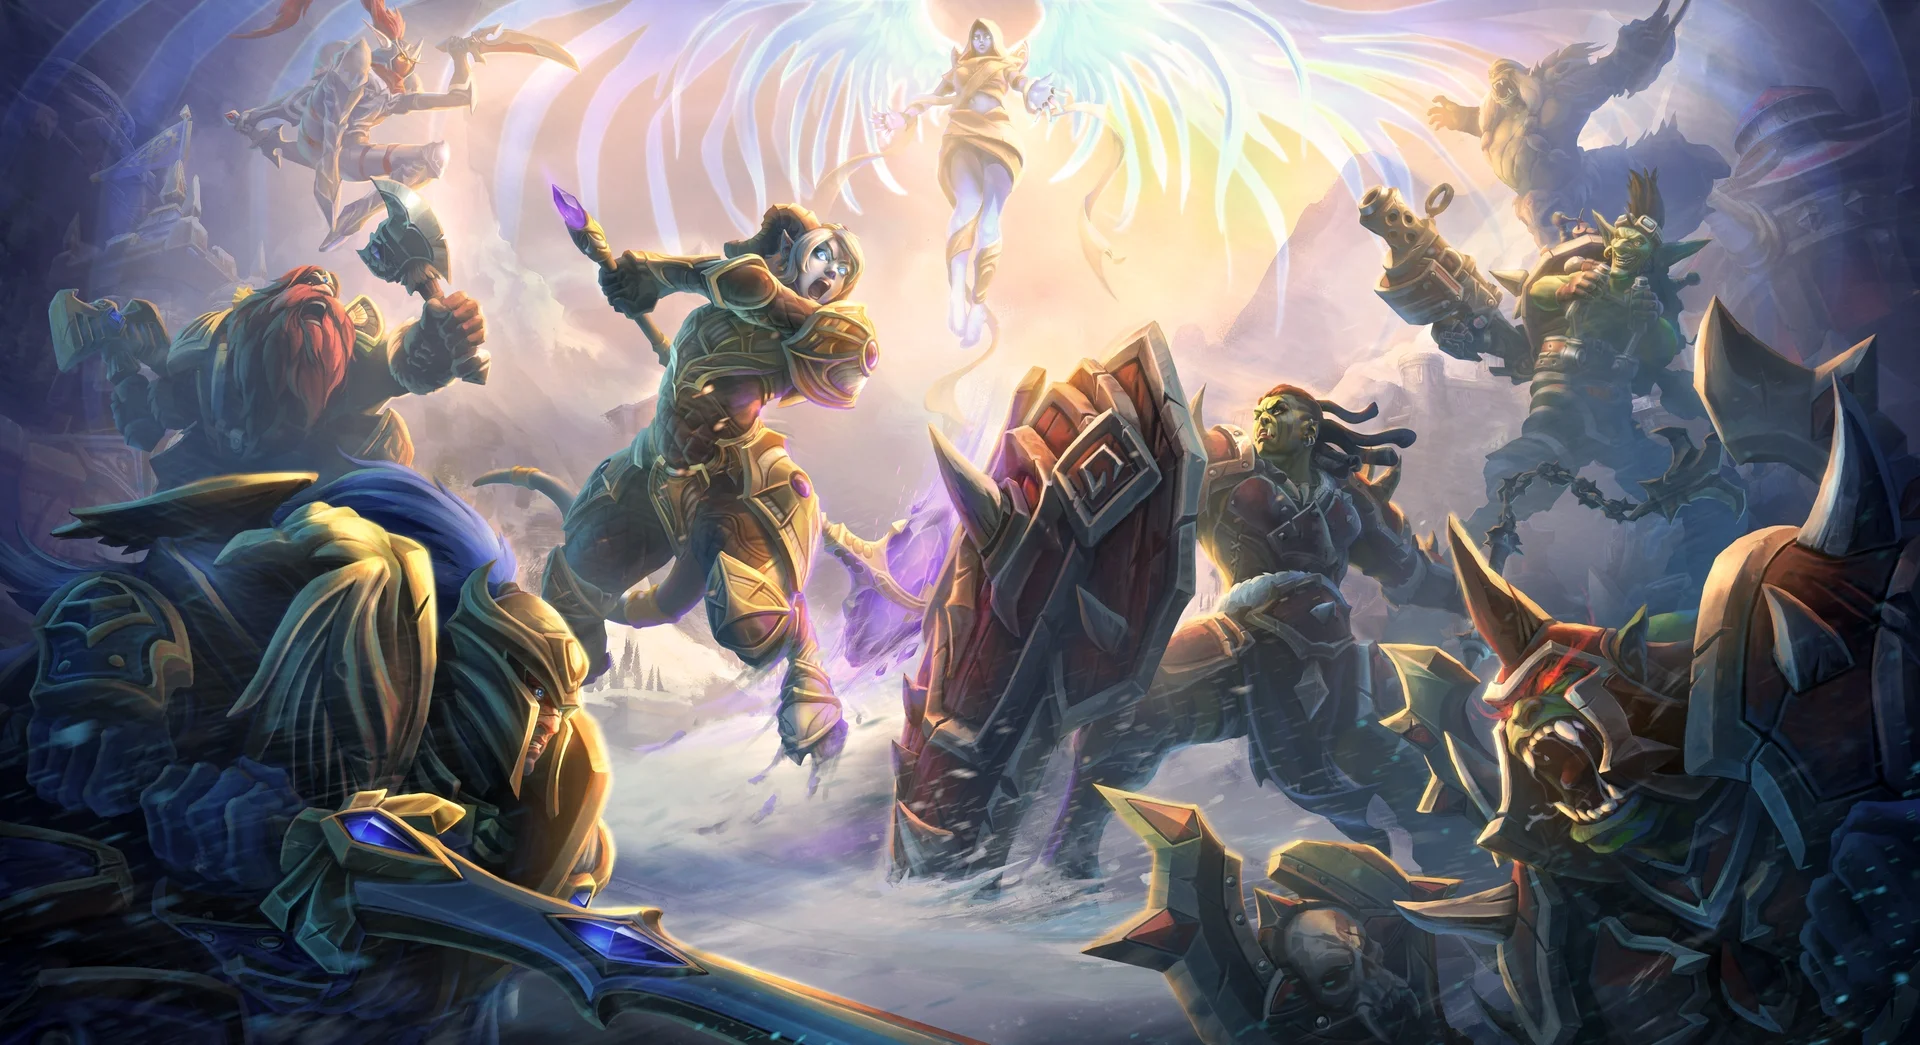 В Heroes of the Storm собраны герои из разных вселенных Blizzard, но больше всего — из Warcraft. И тем не менее в ростере «варкрафтовских» персонажей нет ни одного дренея. Ну, теперь будет — Ирель. А вместе с ней в игре появится новая карта и режим, новая косметика и квест с выбором стороны — Альянс или Орда. О всех новинках мы поговорим подробнее в этом материале.